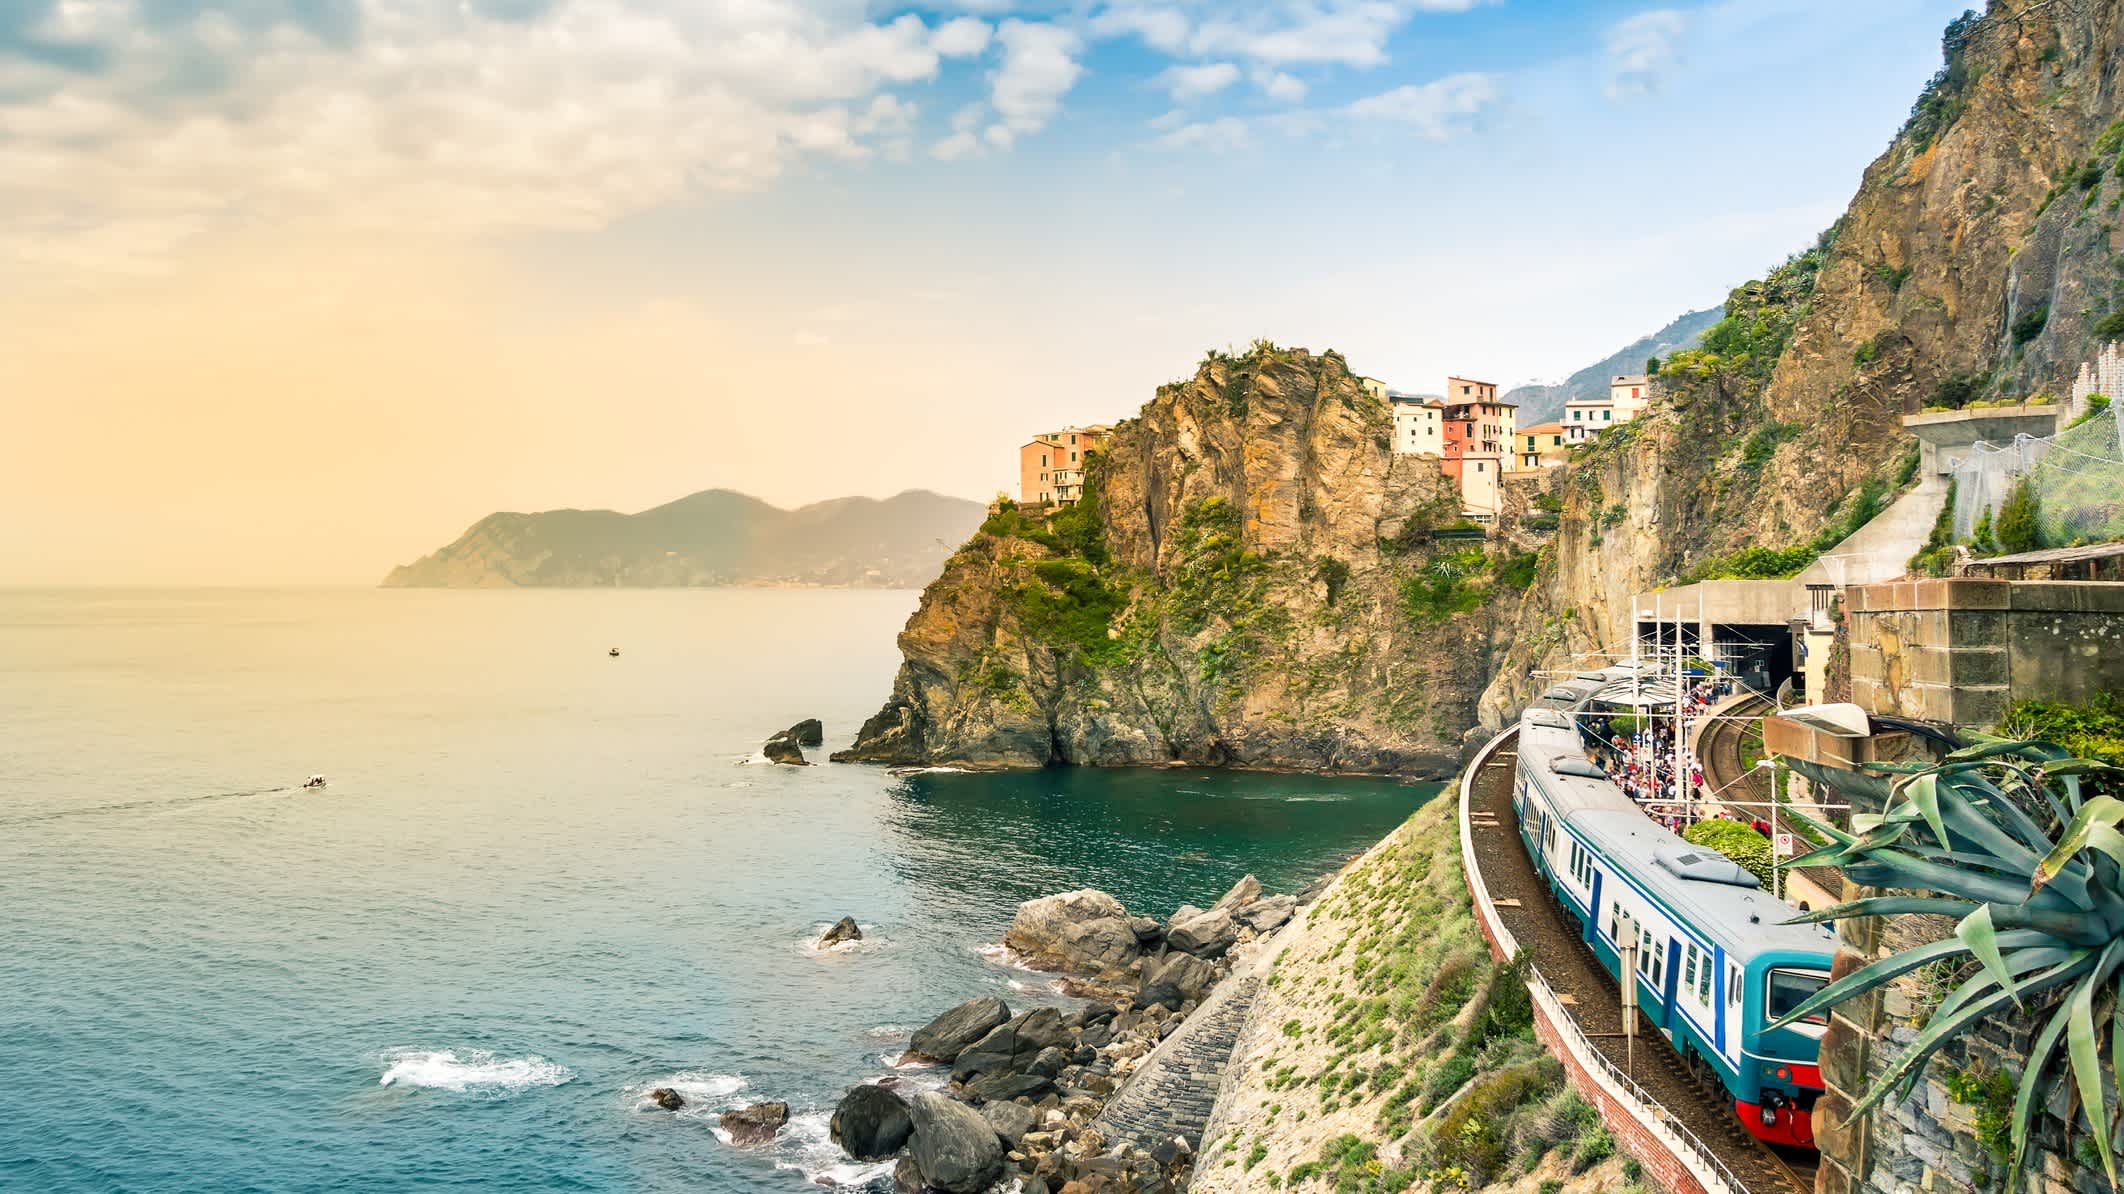 Gare ferroviaire des Cinque Terre et sa côte déchiquetée, est une destination touristique célèbre en Ligurie, en Italie.